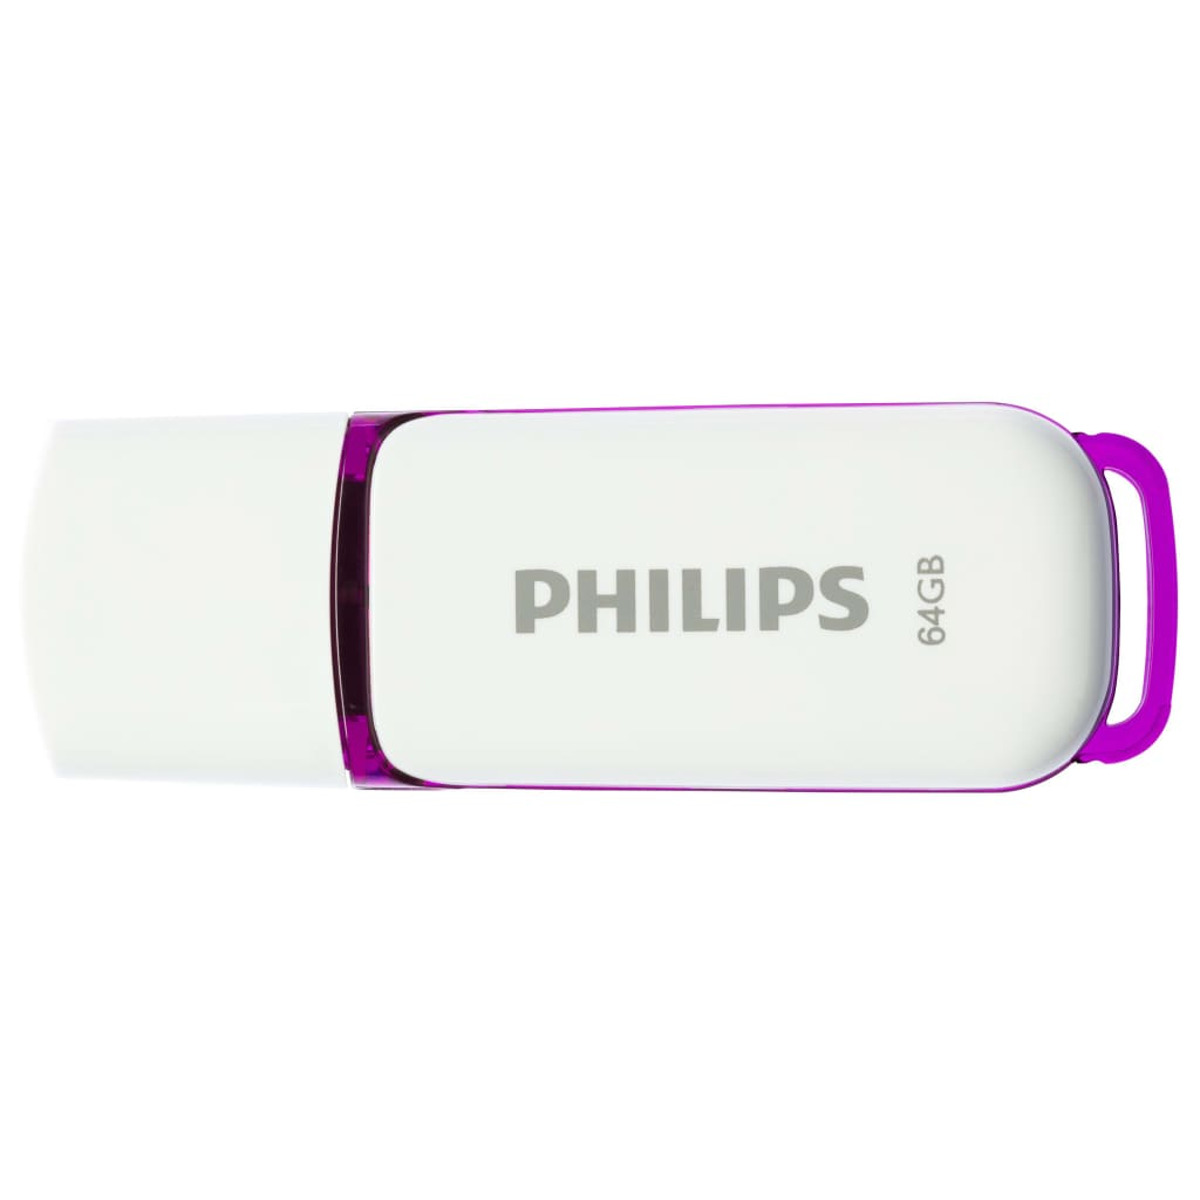 (Weiß, weiss 25 Purple®, PHILIPS 64 Magic GB) Edition 64GB Snow USB-Stick MB/s,